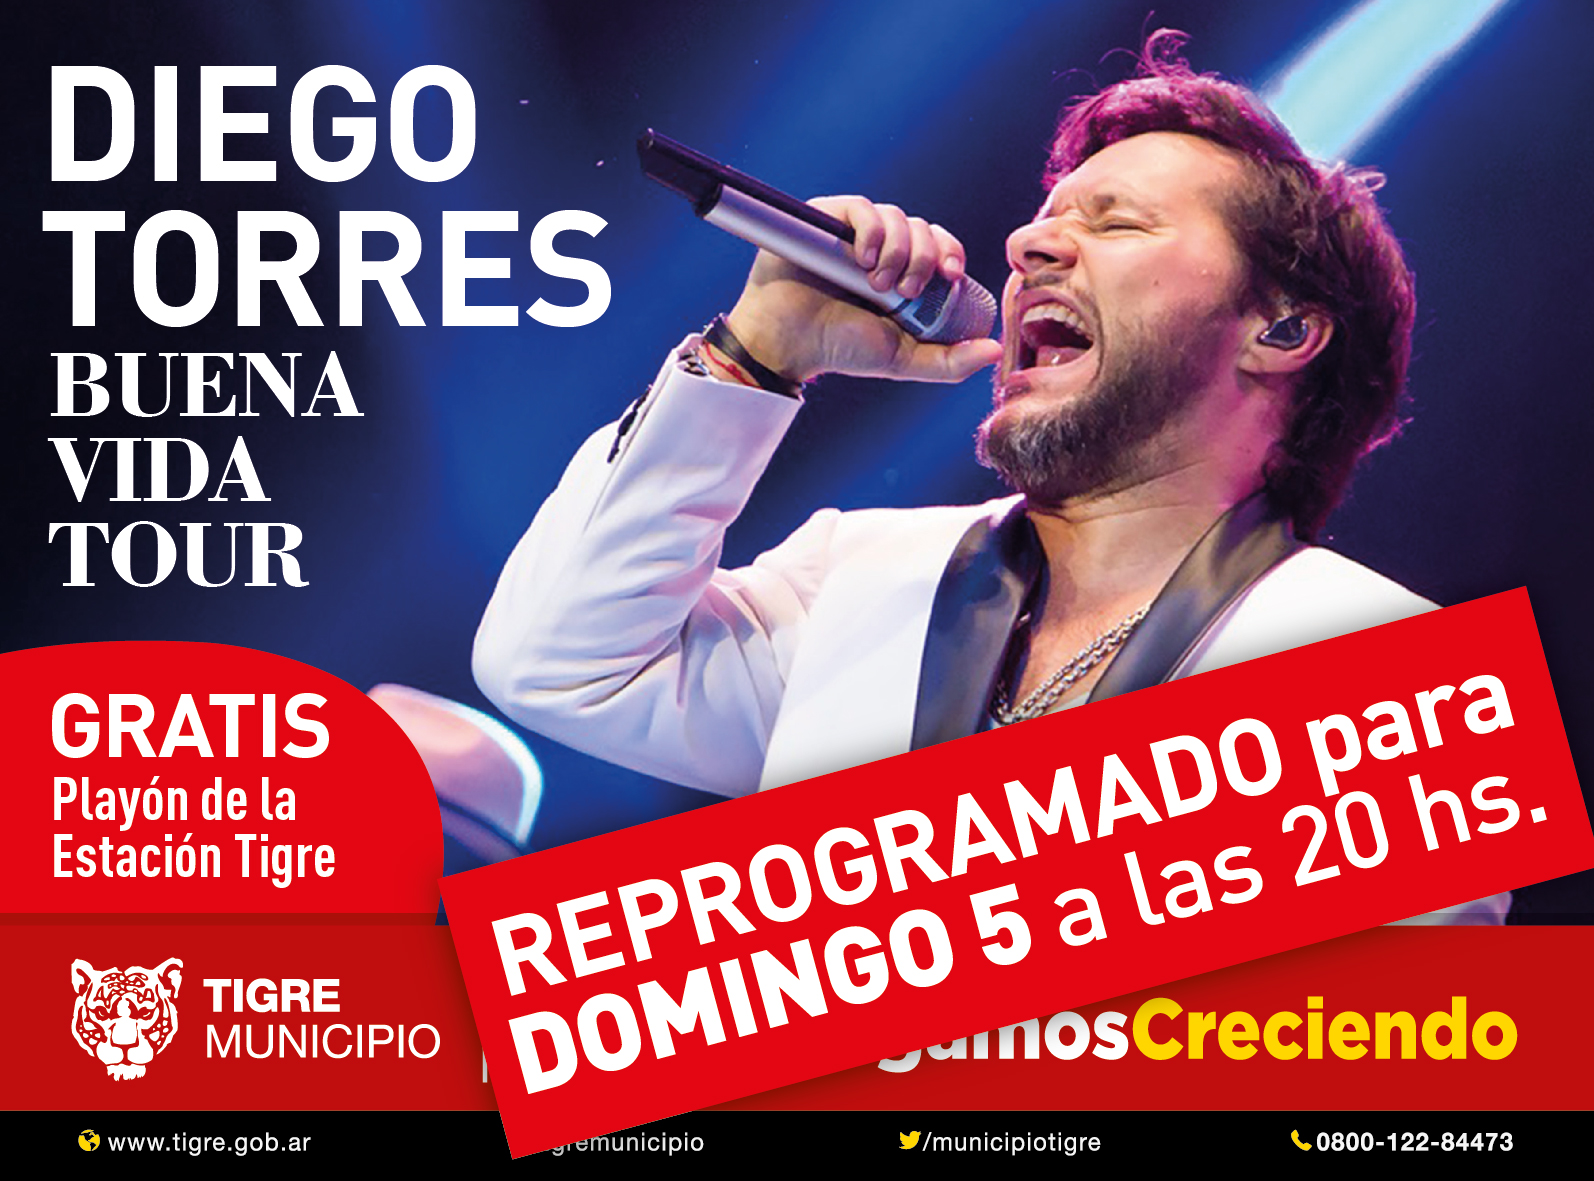  El recital de Diego Torres en Tigre se reprogramó para el domingo